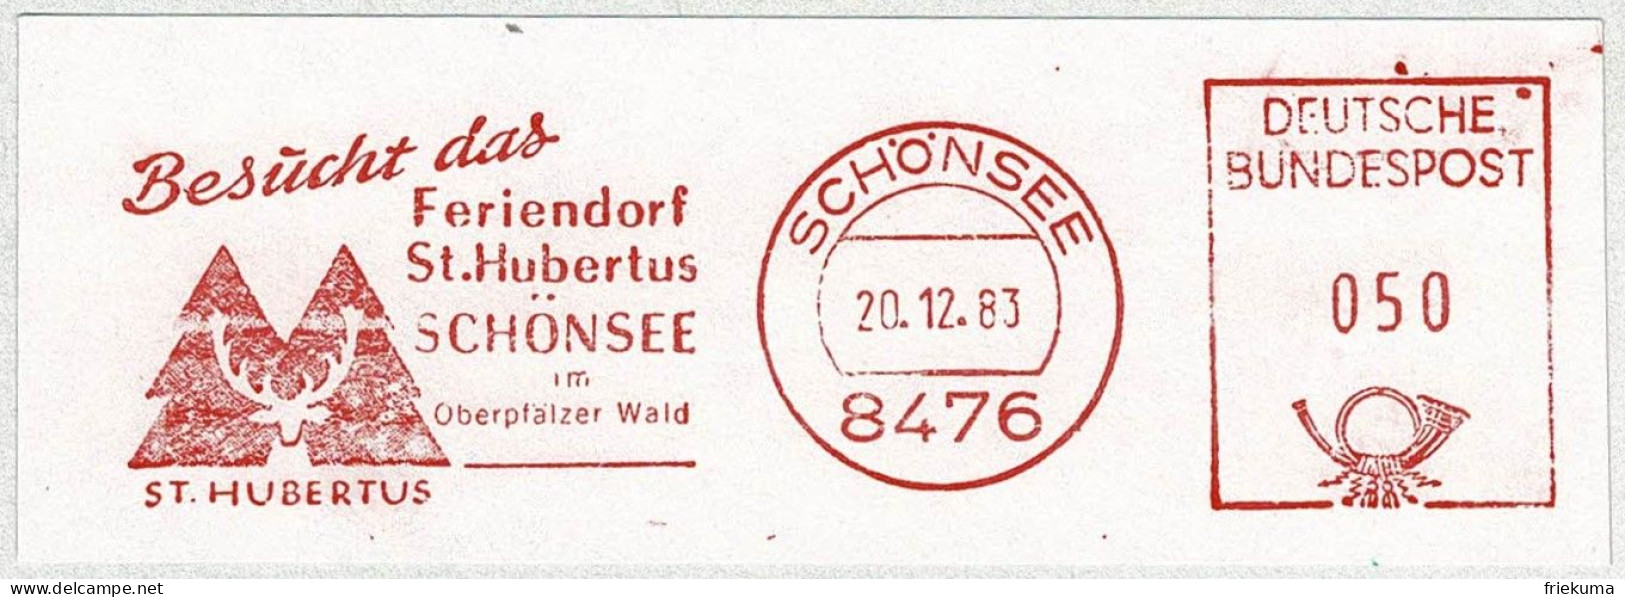 Deutsche Bundespost 1983, Freistempel / EMA / Meterstamp Schönsee, Feriendorf St. Hubertus, Jagd - Hotel- & Gaststättengewerbe